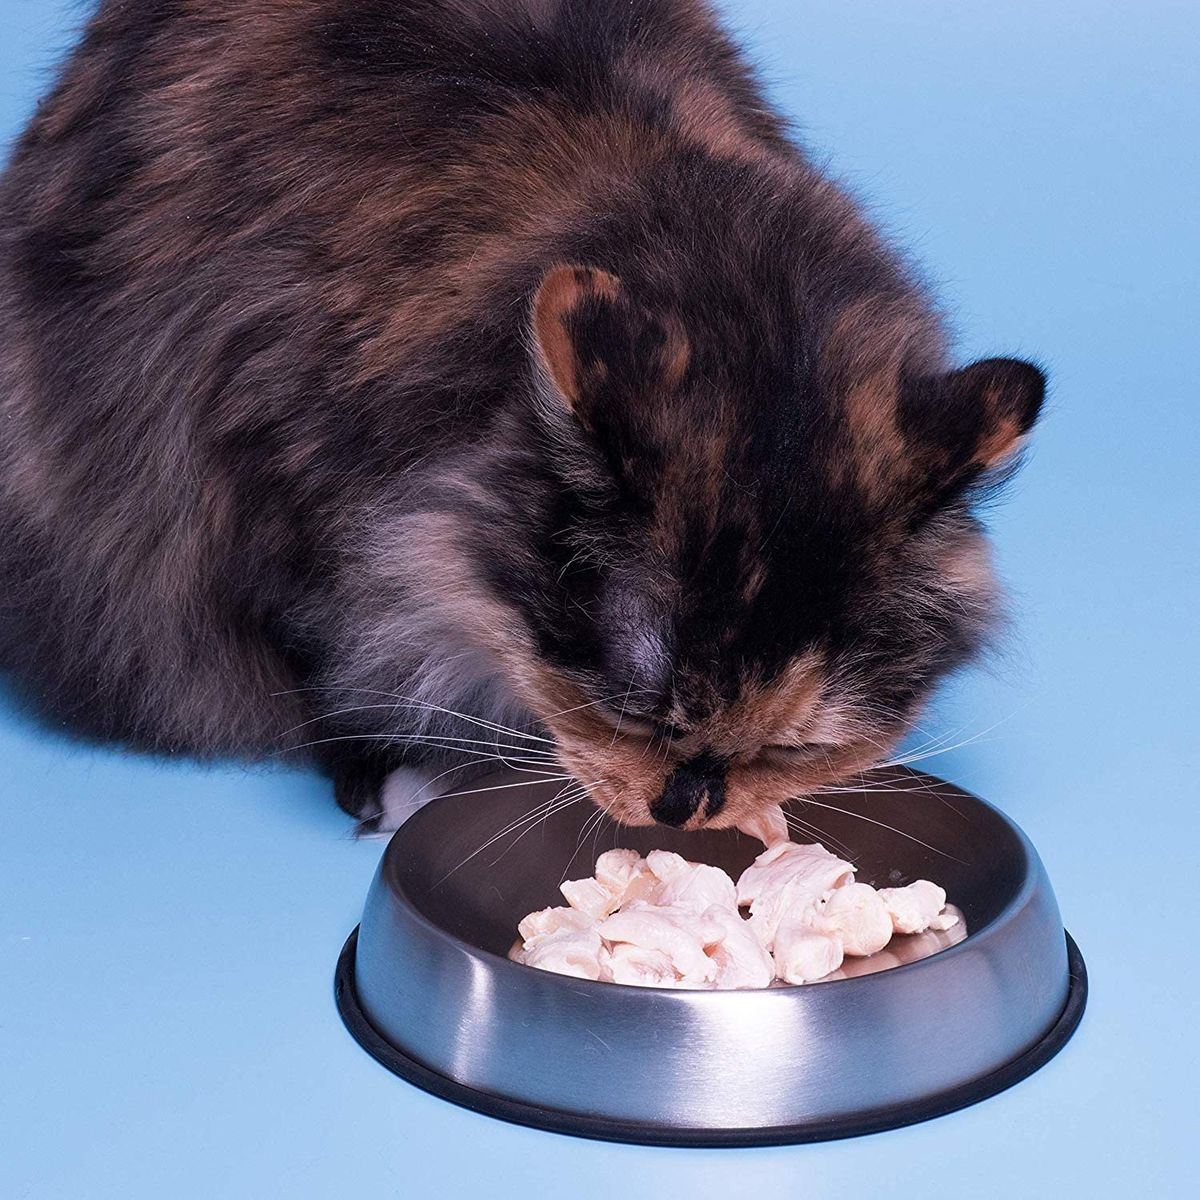 Die 5 besten Futternäpfe für Katzen, laut einem Tierarzt